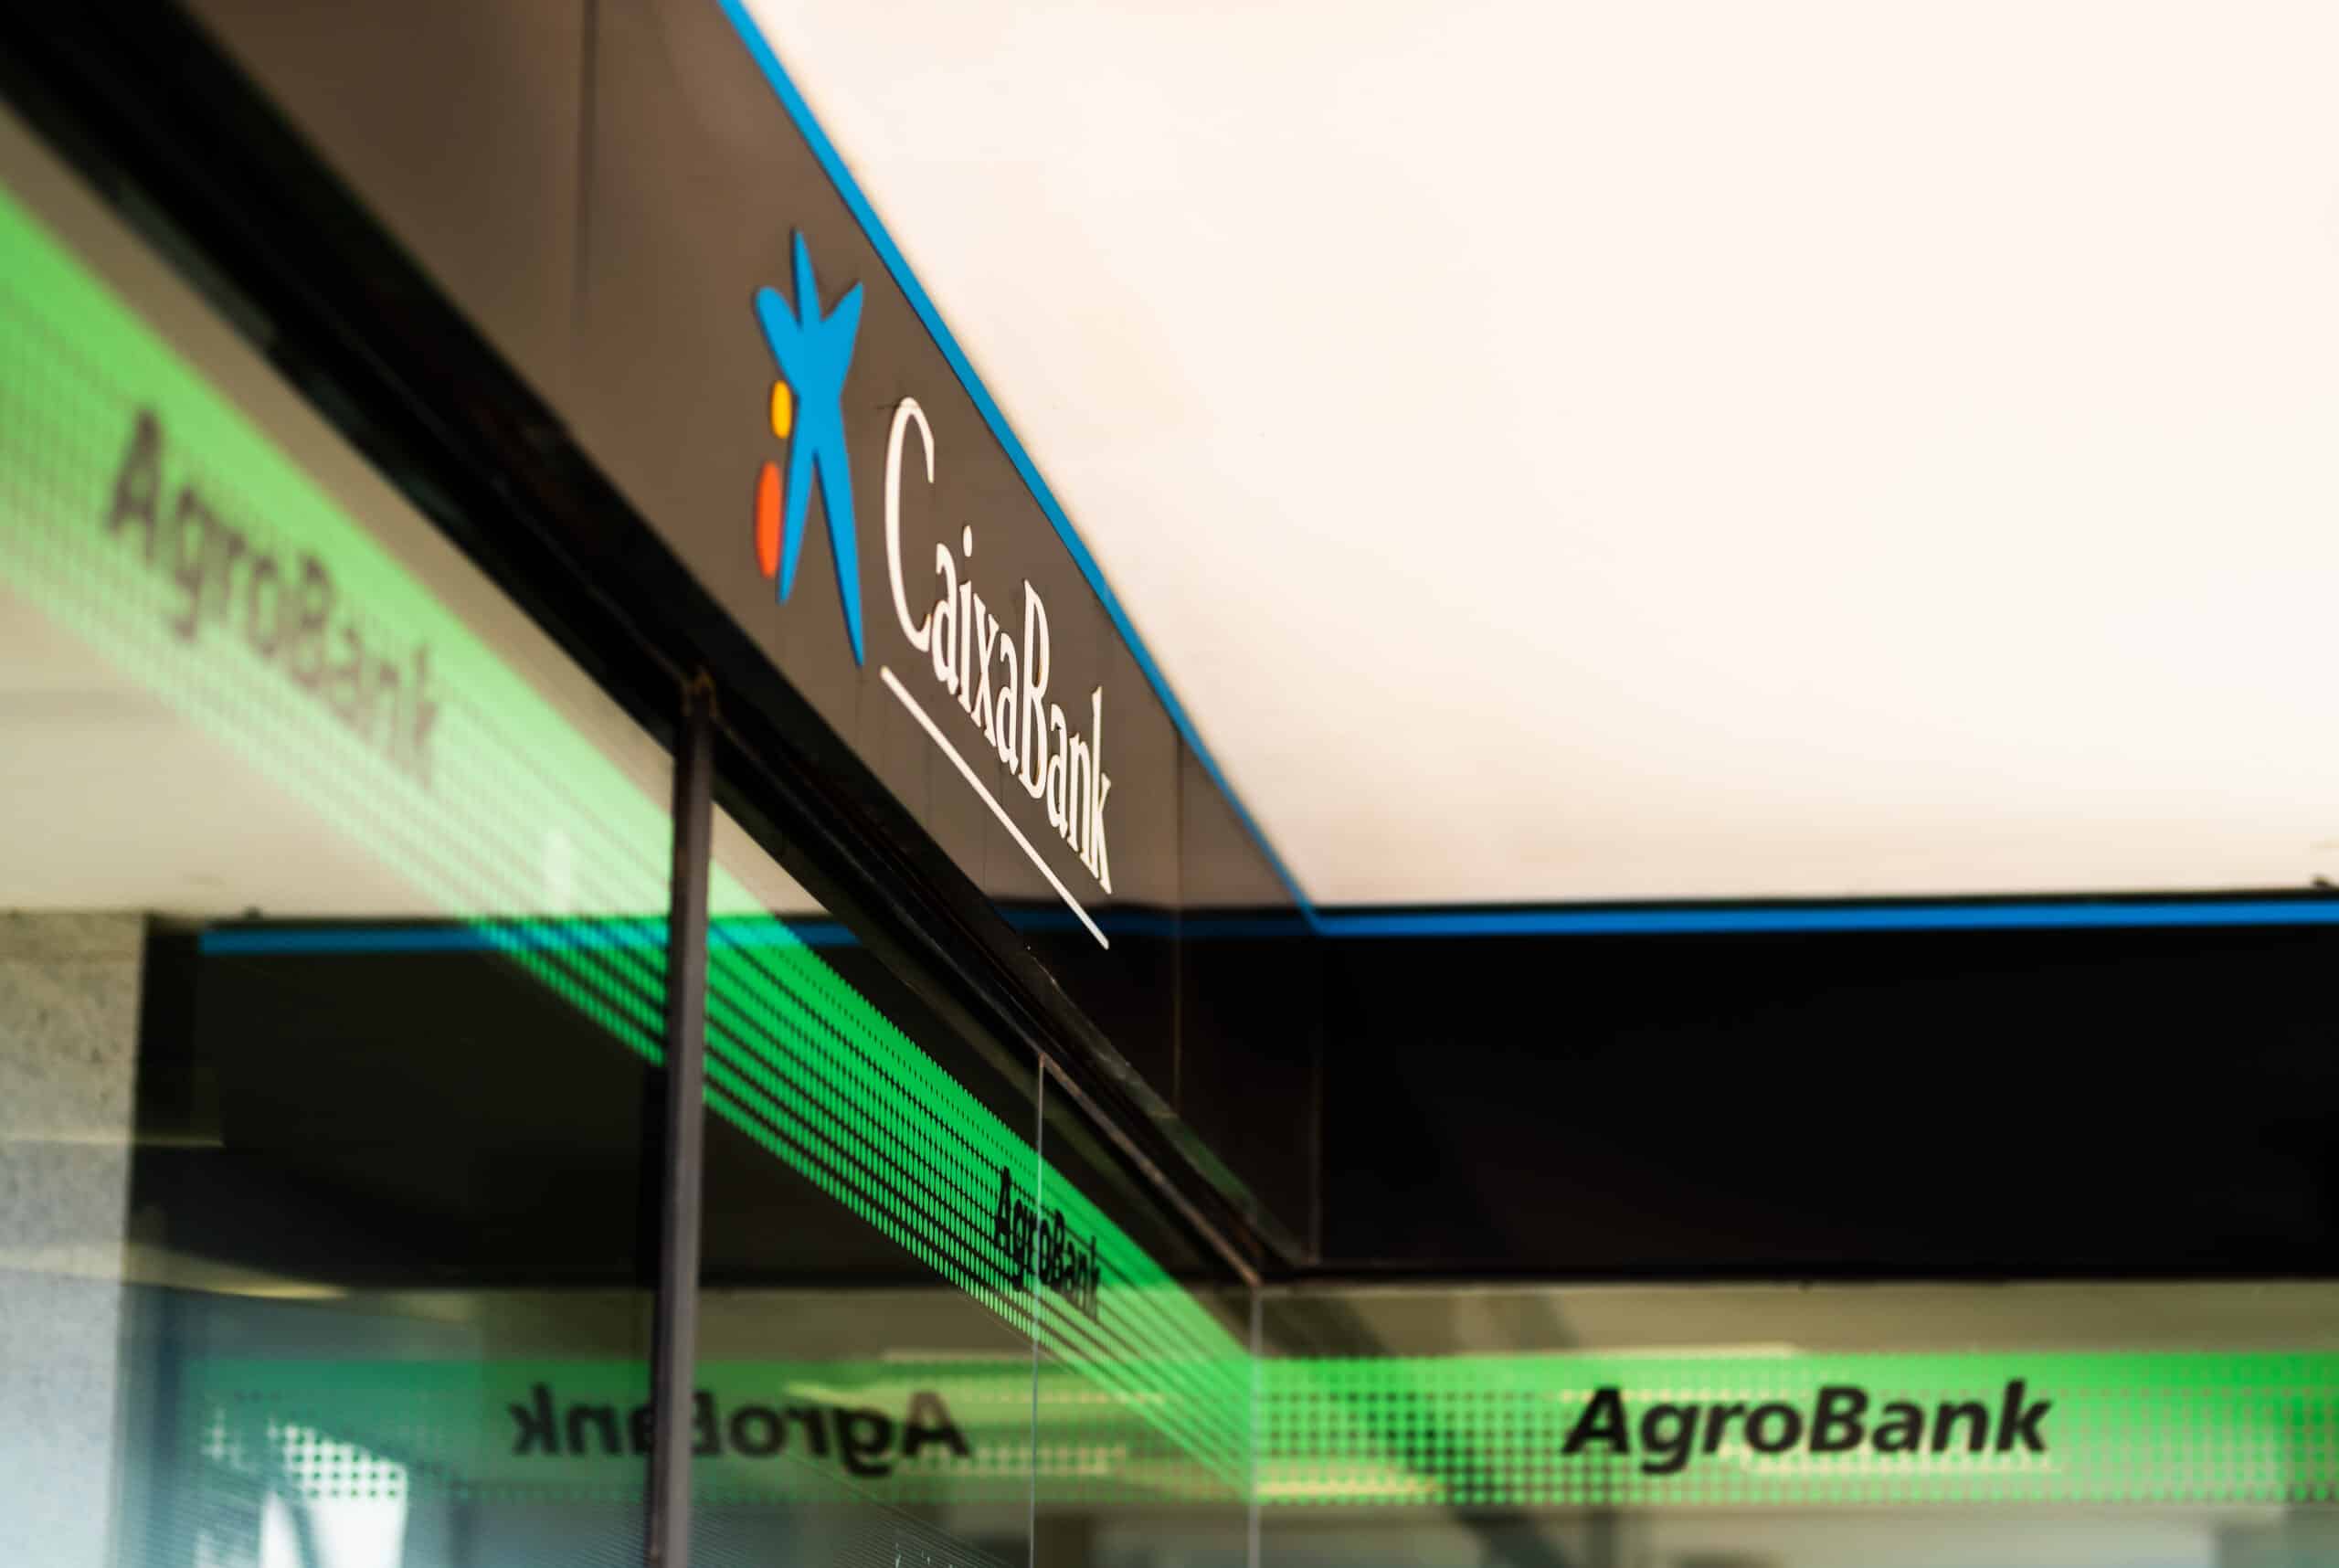 AgroBank, de Caixabank, financia con casi 13.500 millones al sector agroalimentario, un 3,1% más